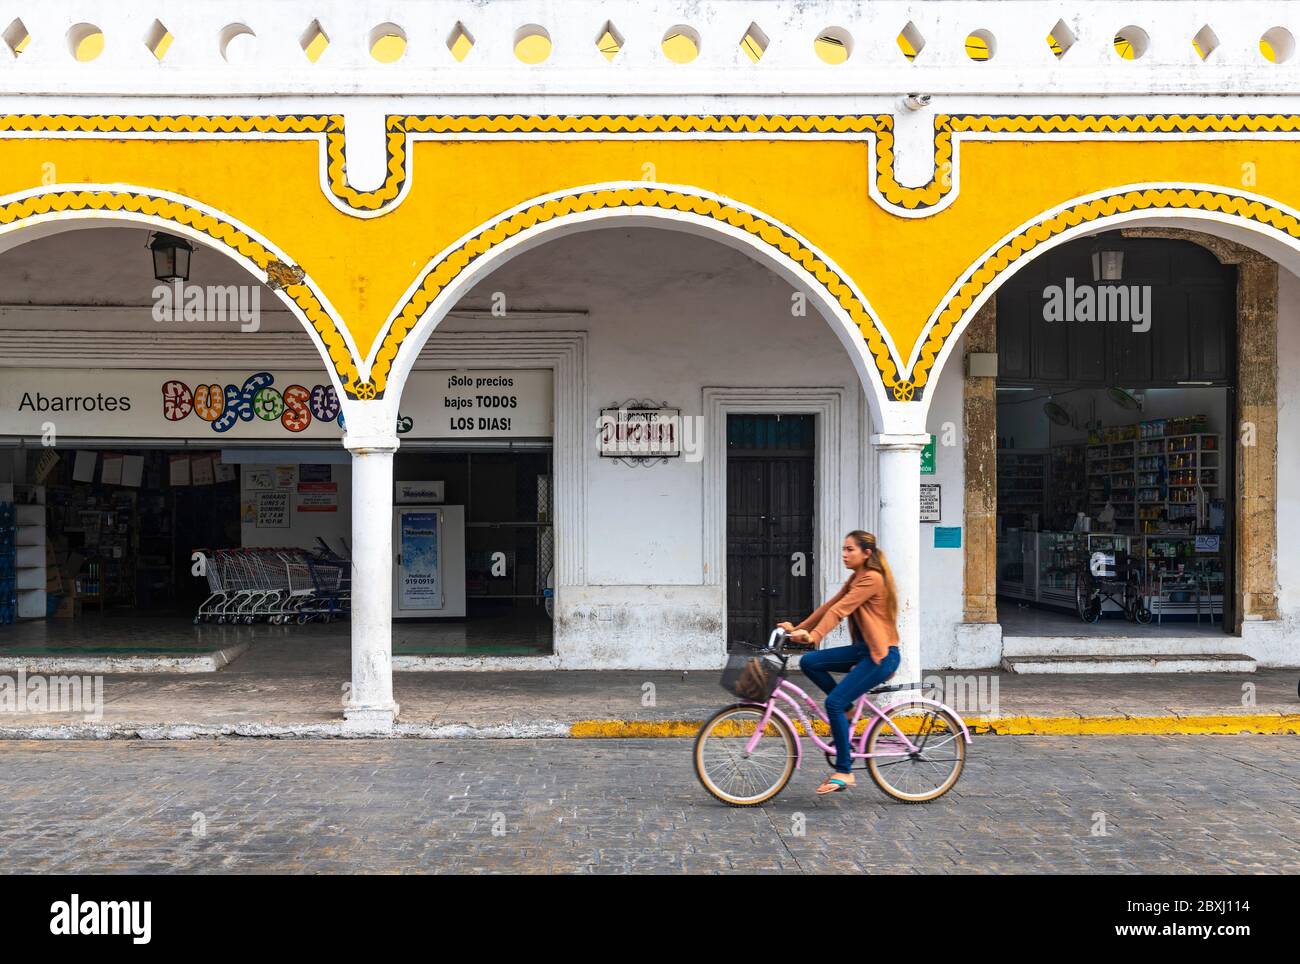 Junge mexikanische Frau auf einem Fahrrad mit Unschärfe-Bewegung in der gelben Stadt Izamal mit Bogenarchitektur am Hauptplatz, Yucatan Halbinsel, Mexiko. Stockfoto